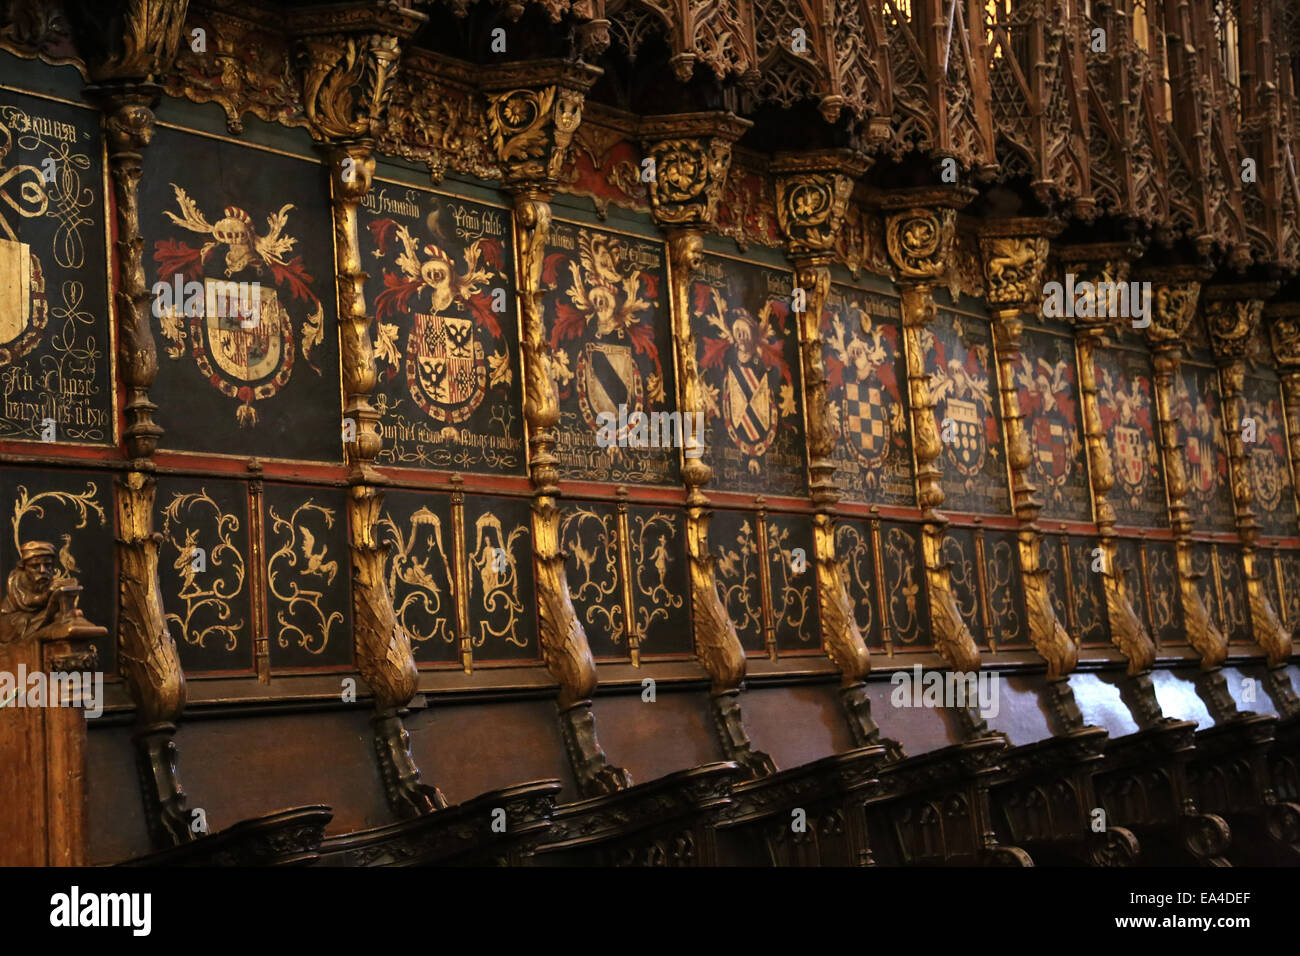 España. Barcelona. Catedral de la Santa Cruz y Santa Eulalia. La sillería del coro. Detalle de los escudos de armas. Foto de stock